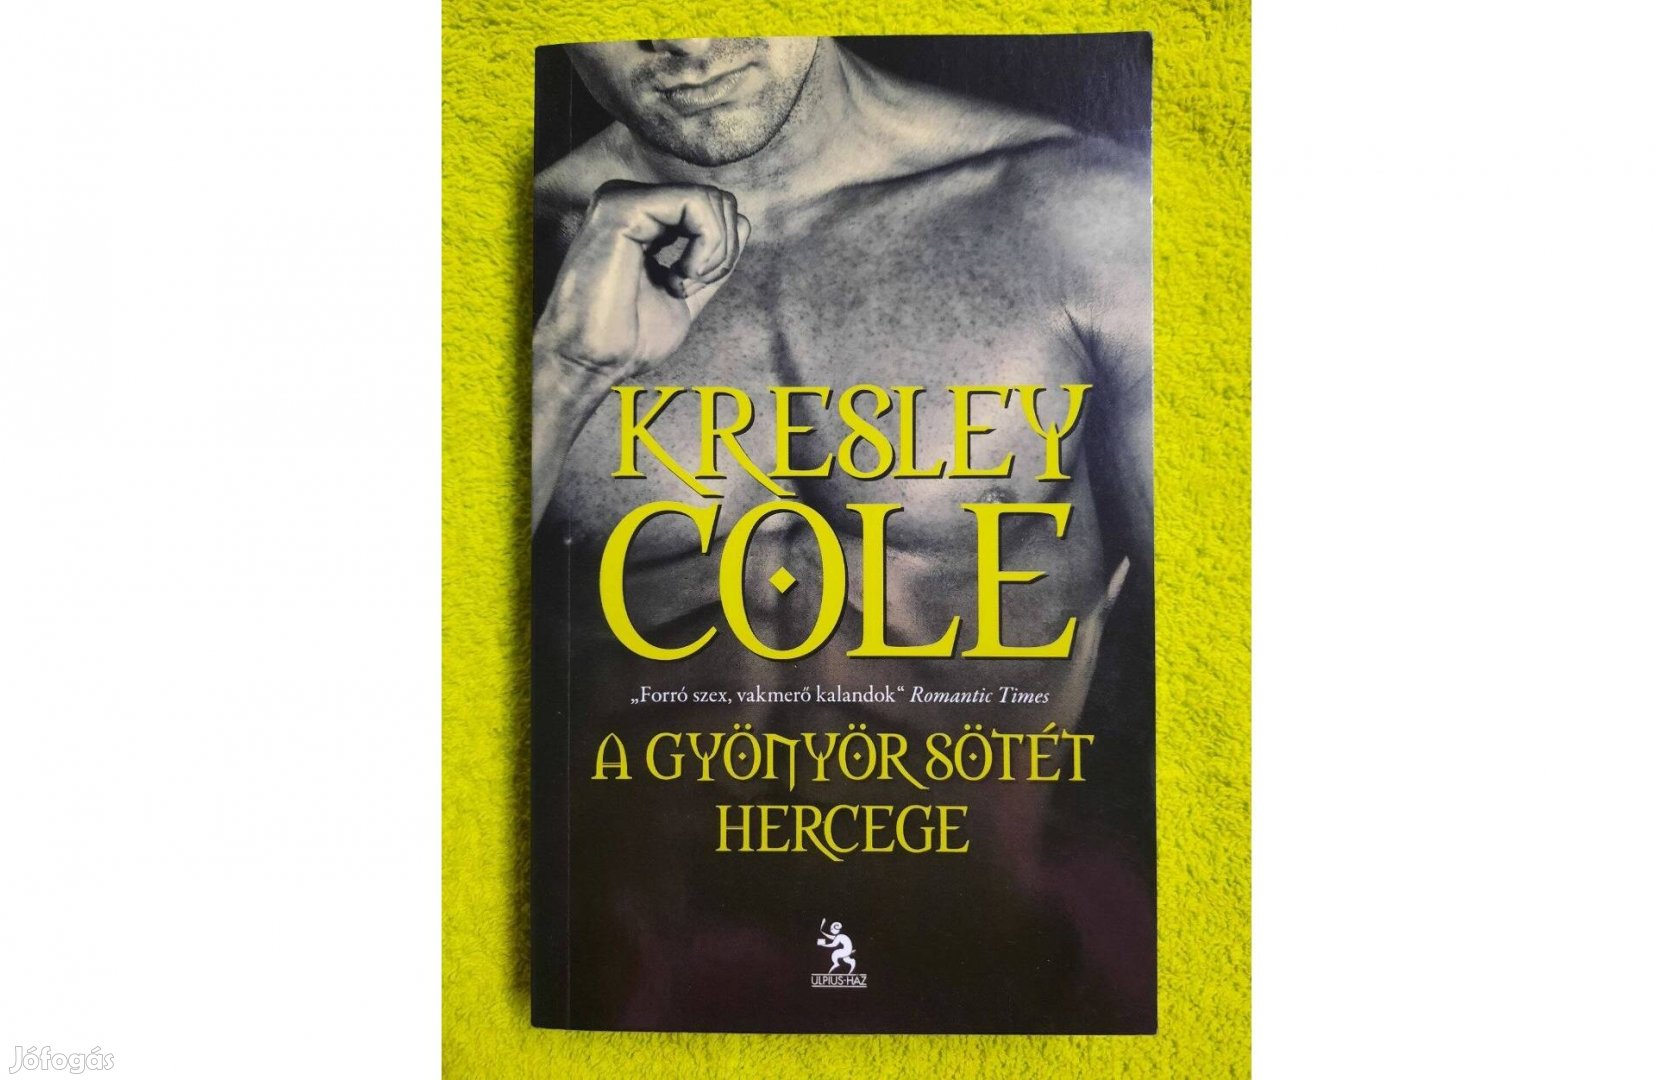 Kresley Cole: A gyönyör sötét hercege